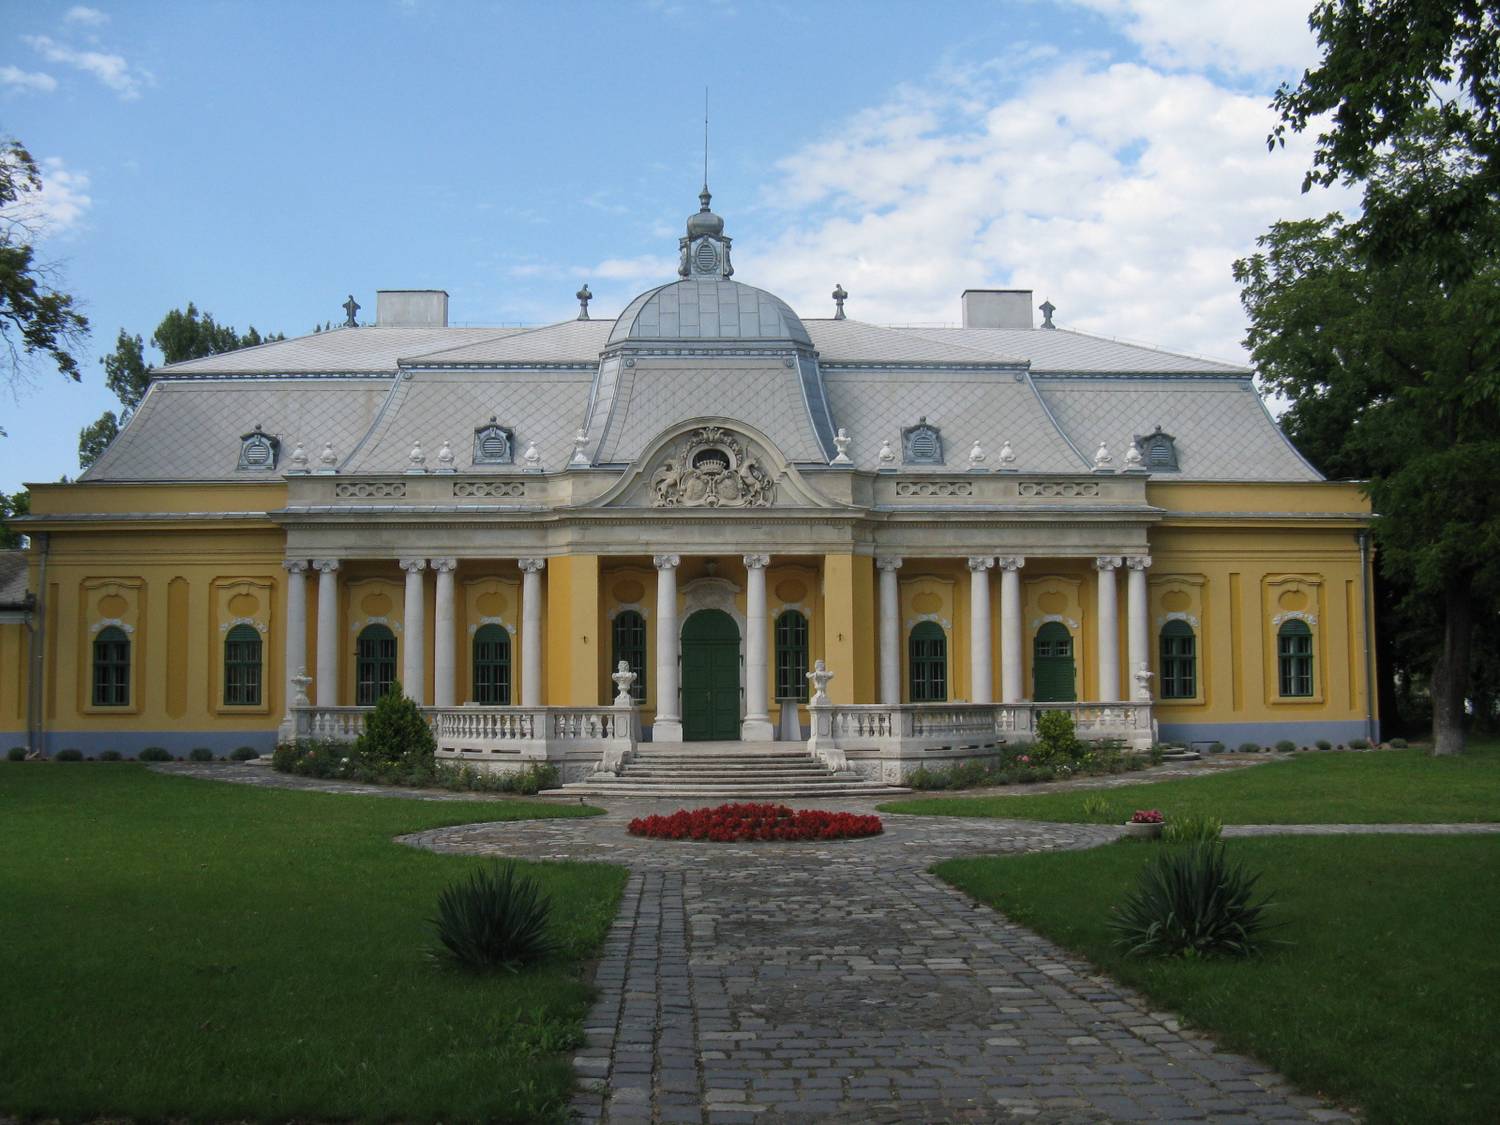 Rákoskeresztúr gyöngyszeme az 1760-ban épült, barokk stílusú Podmaniczky–Vigyázó-kastély, mely jelenleg rendezvényközpontként működik, konferenciákat, esküvőket is tartanak benne. Díszterme és gondozott kertje is gyönyörű.